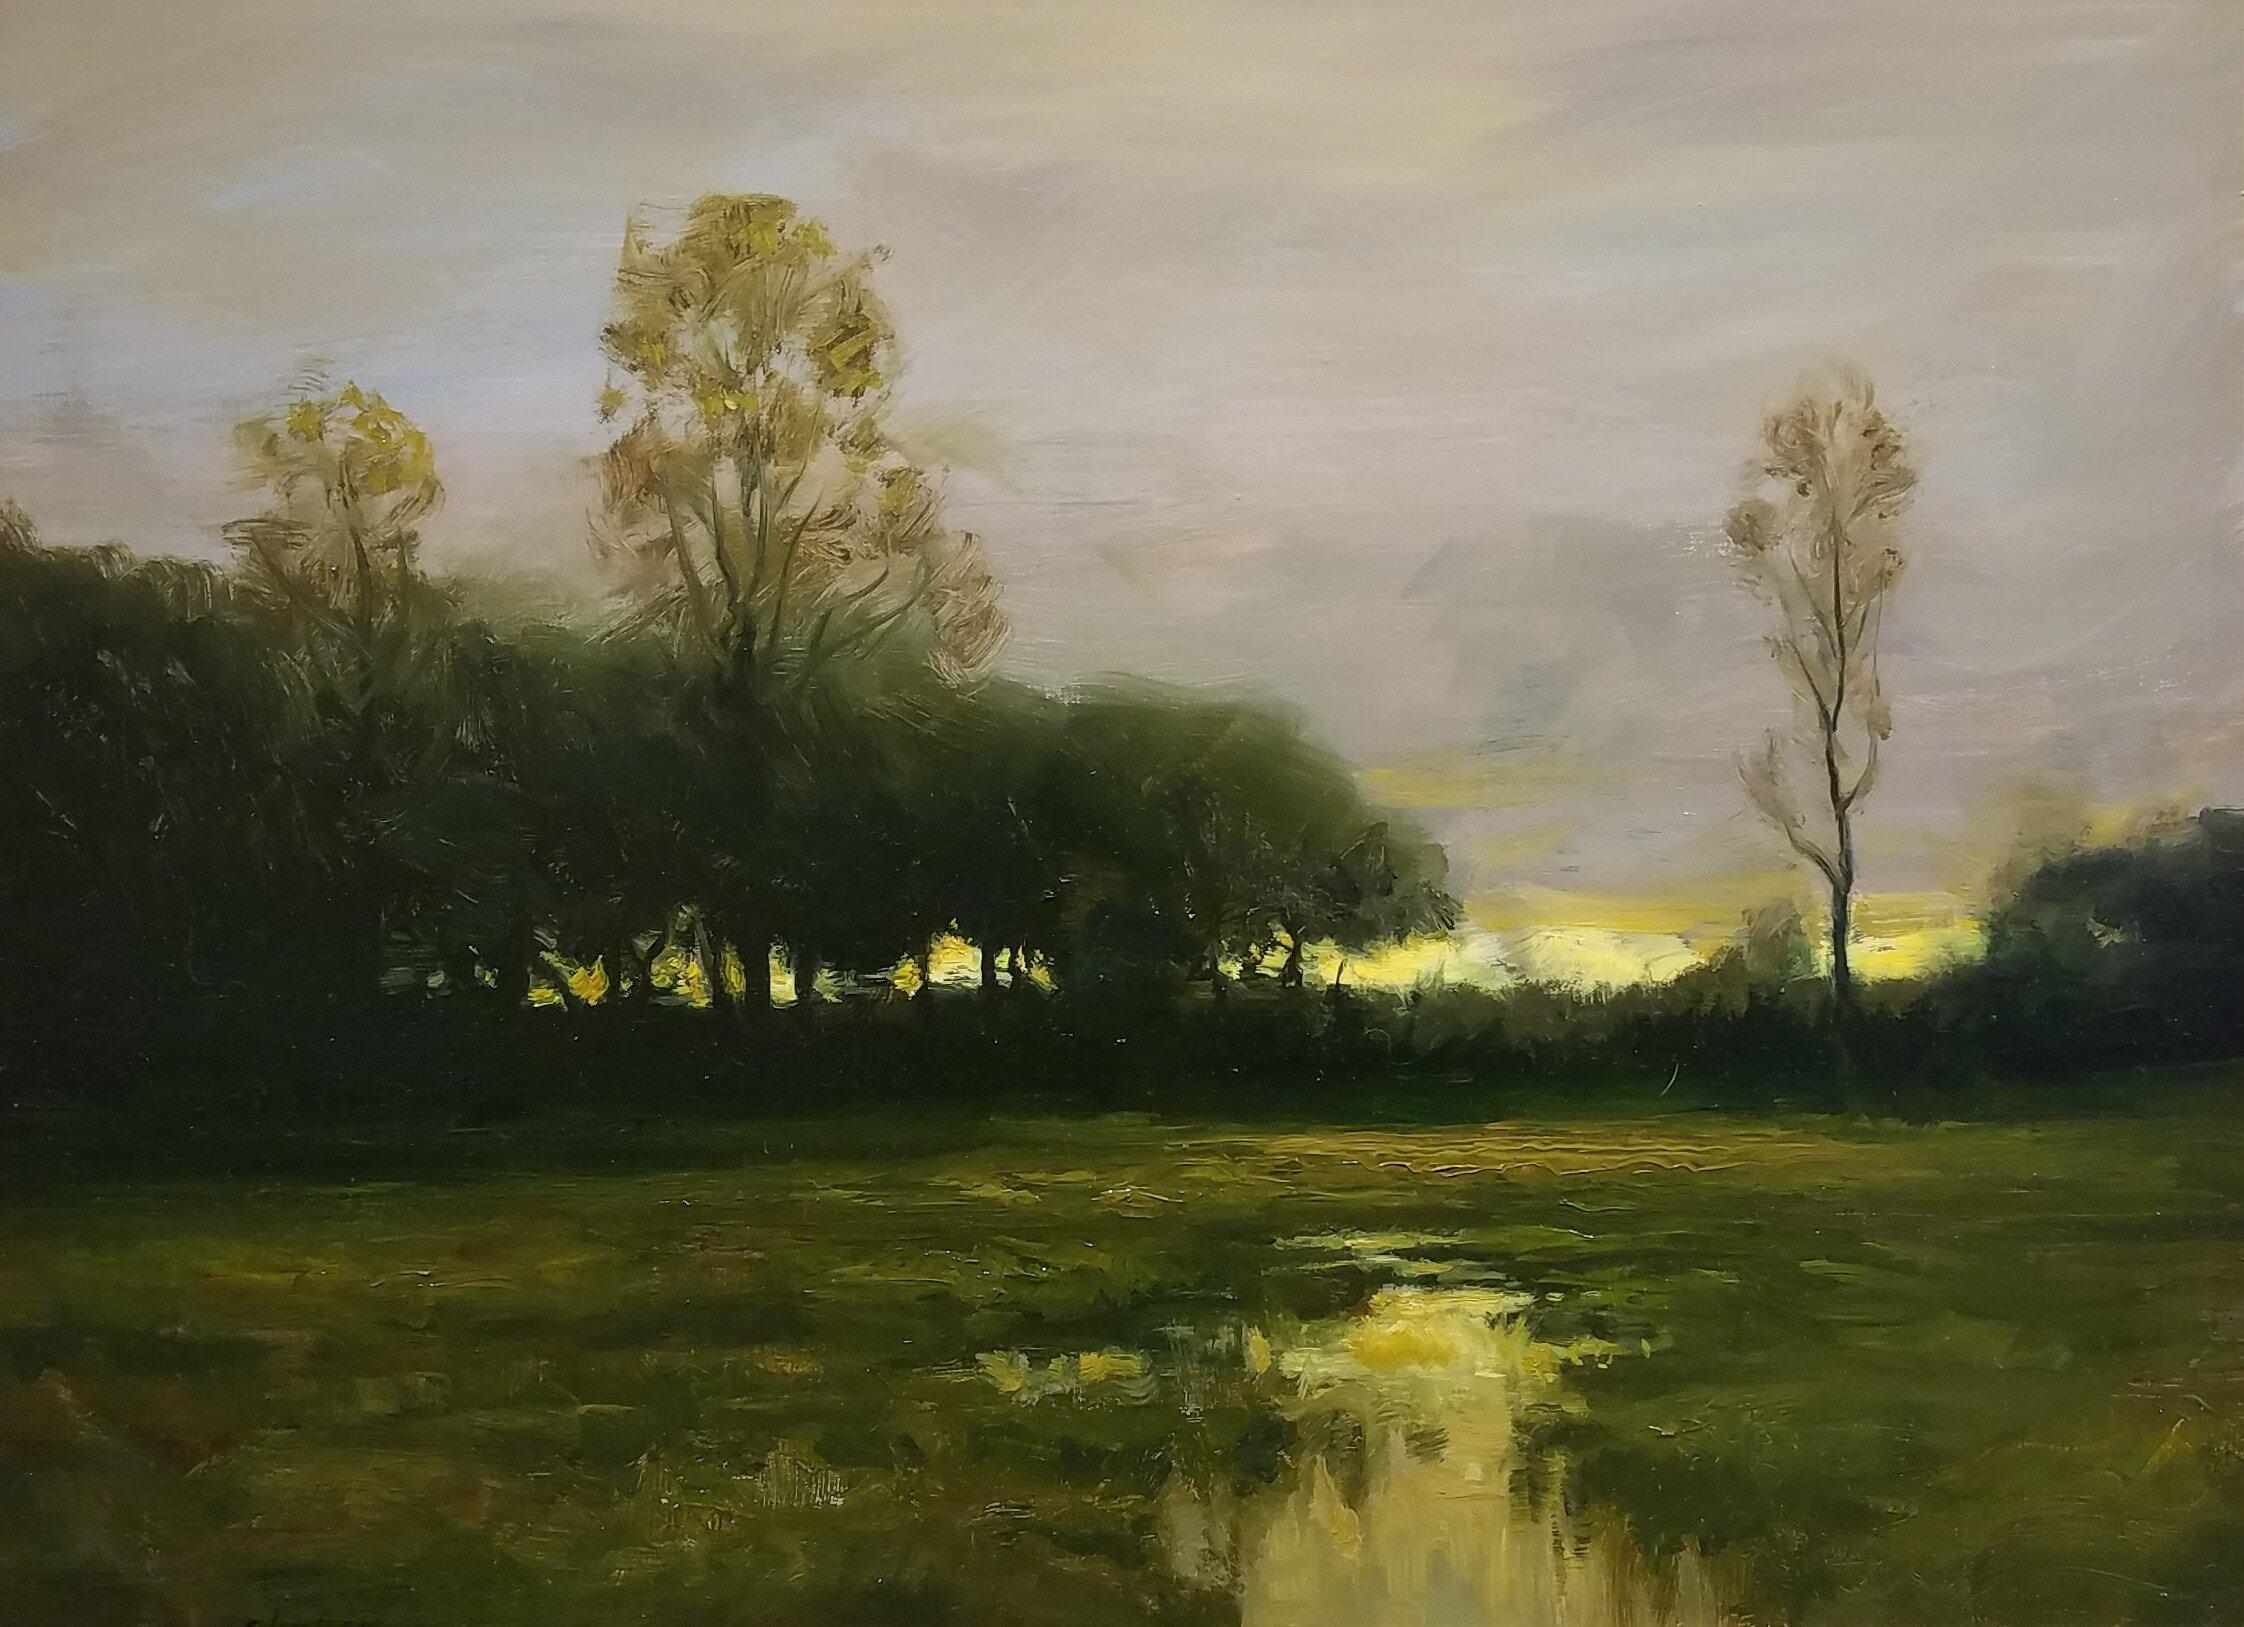 Dieses Werk "Across the Marsh" des Künstlers Dennis Sheehan ist ein 18x24 großes Ölgemälde auf Leinwand, das eine grüne Sumpflandschaft in der Abenddämmerung zeigt. Dieses stimmungsvolle Gemälde zeigt eine Baumreihe am Horizont, durch die das